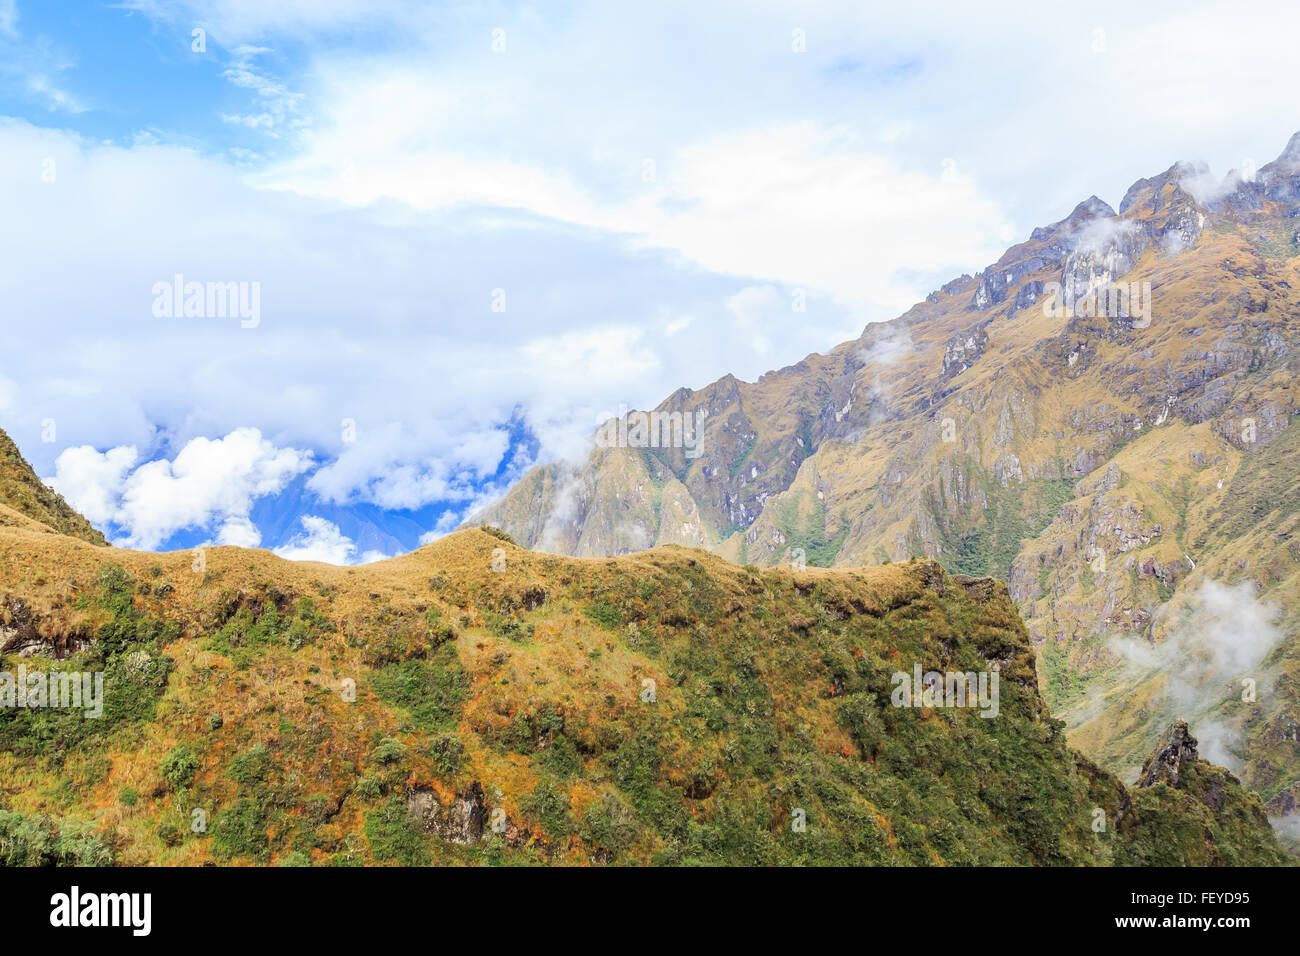 Inka-Trail nach Machu Picchu (auch bekannt als Camino Inca). In den Anden gelegen, führt der Weg durch mehrere ty Stockfoto